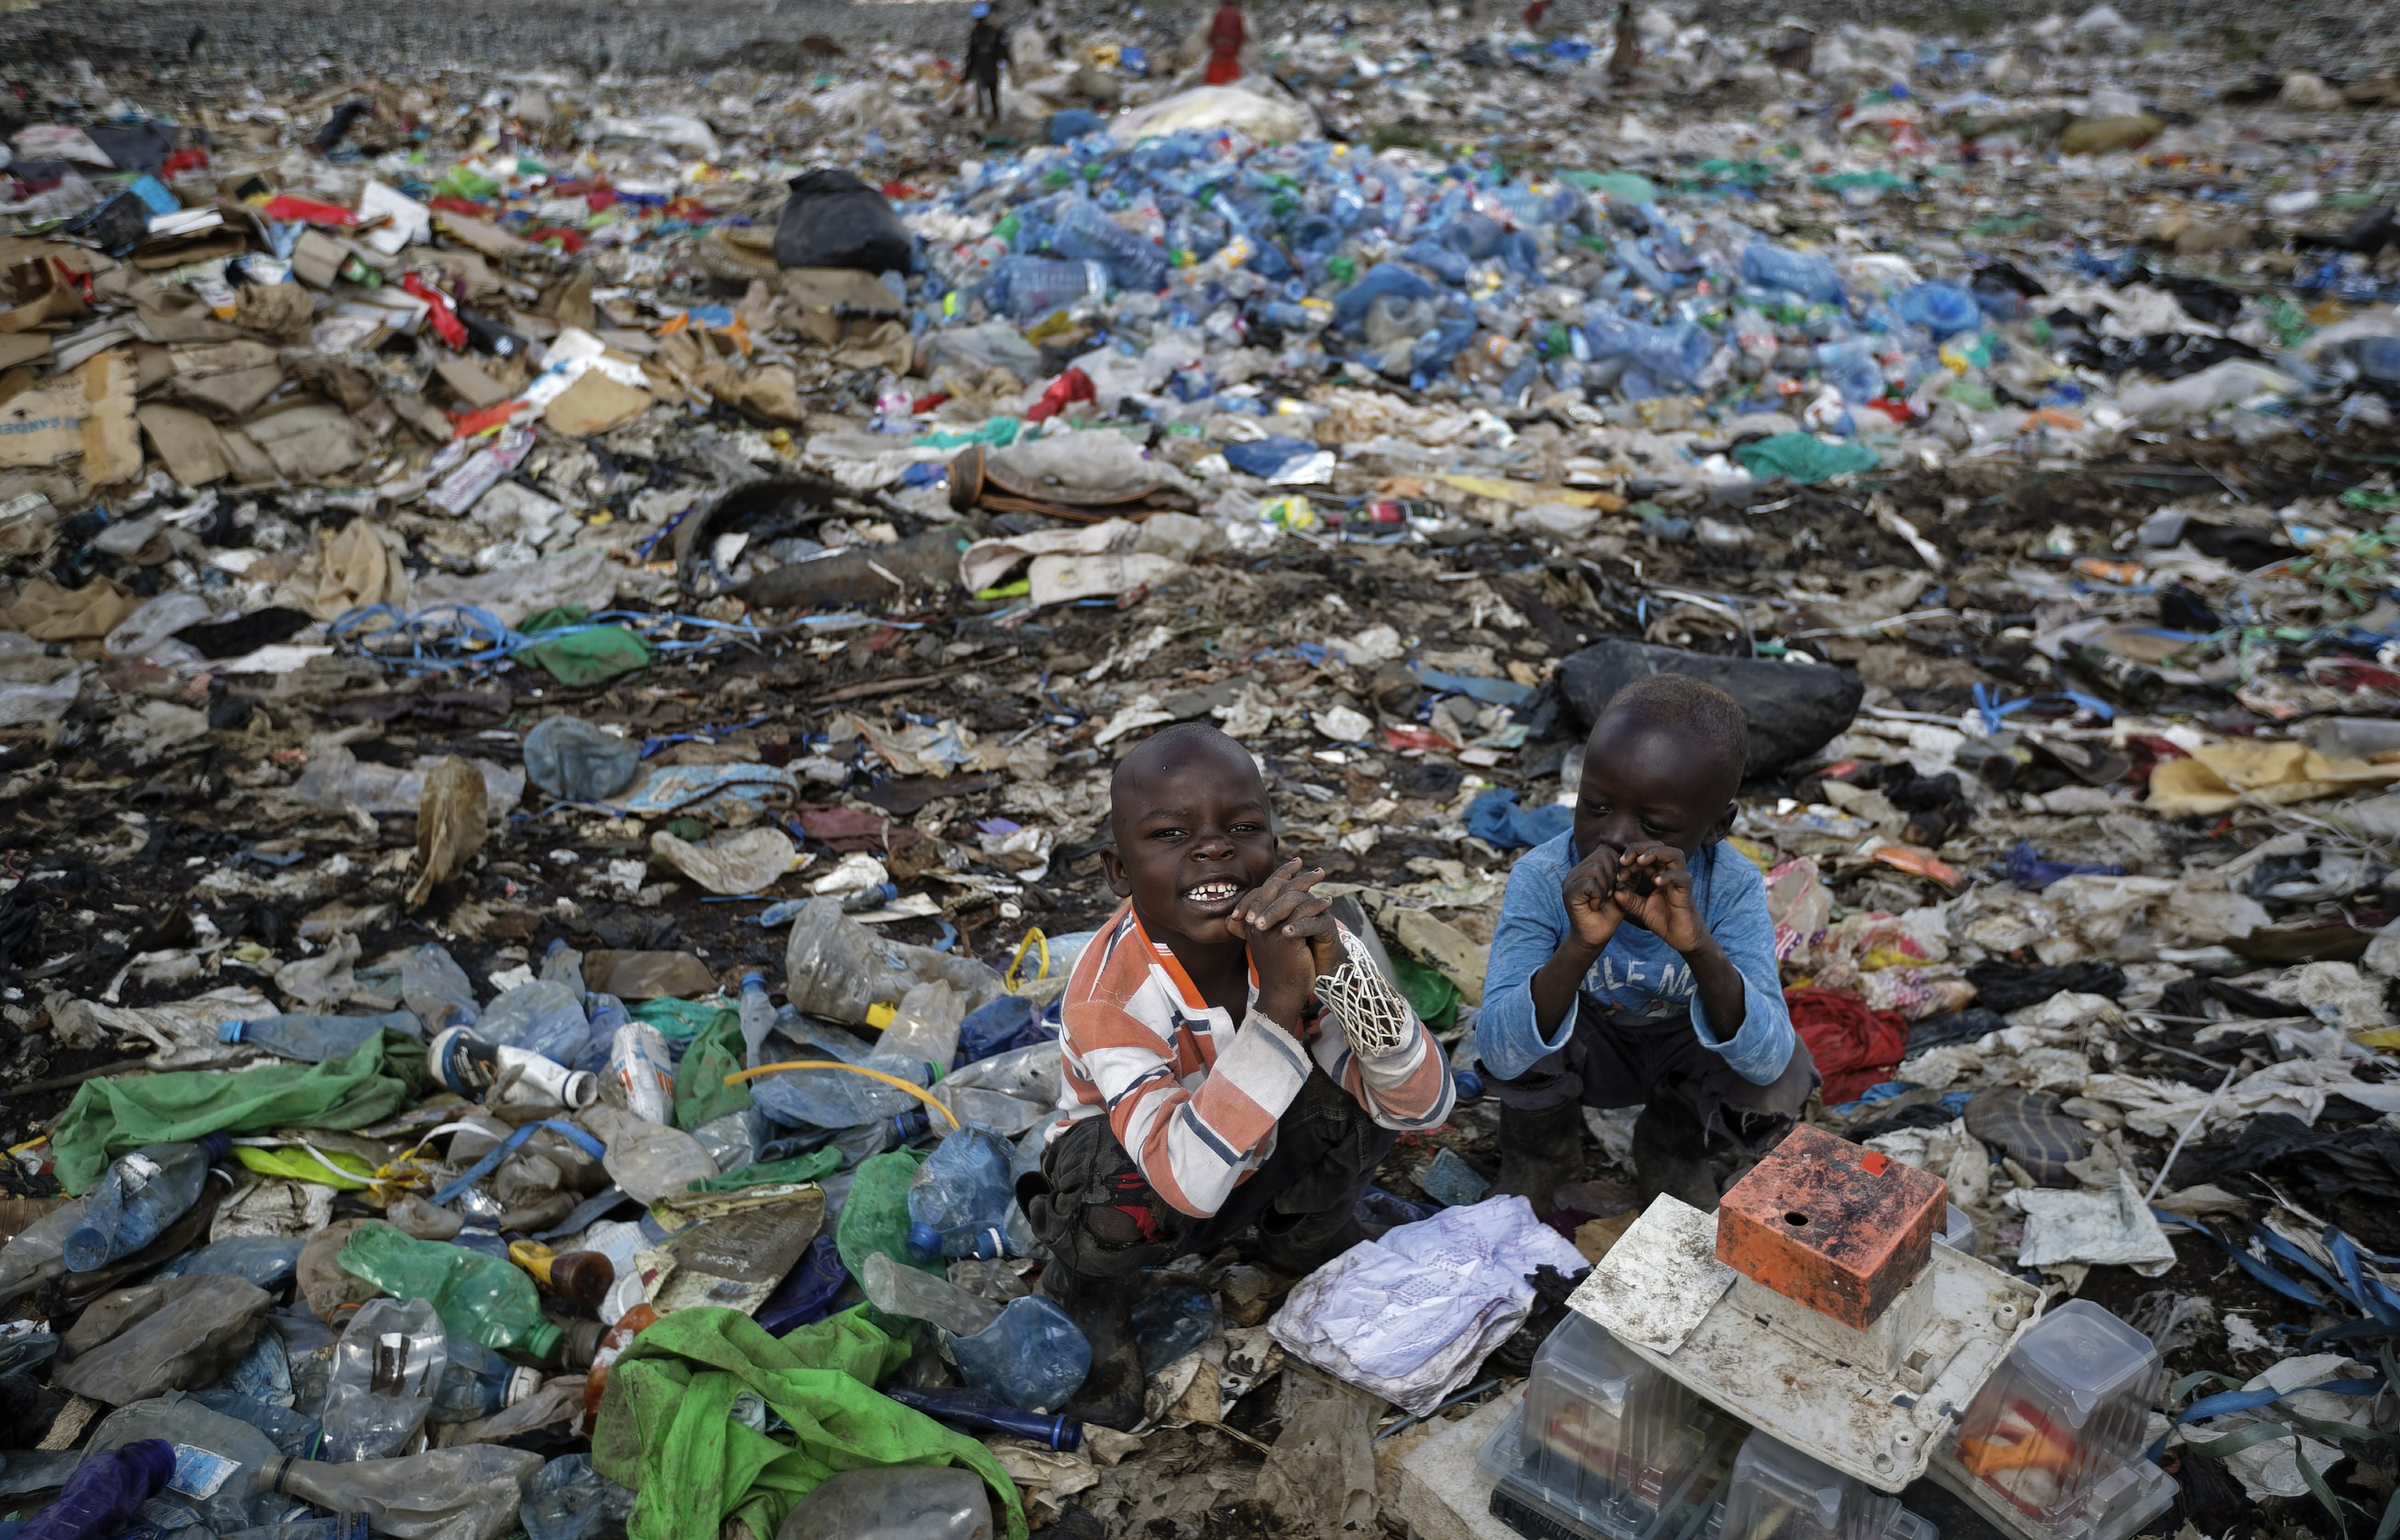 实拍在非洲垃圾填埋场拾荒的贫民 身处环境令人触目惊心